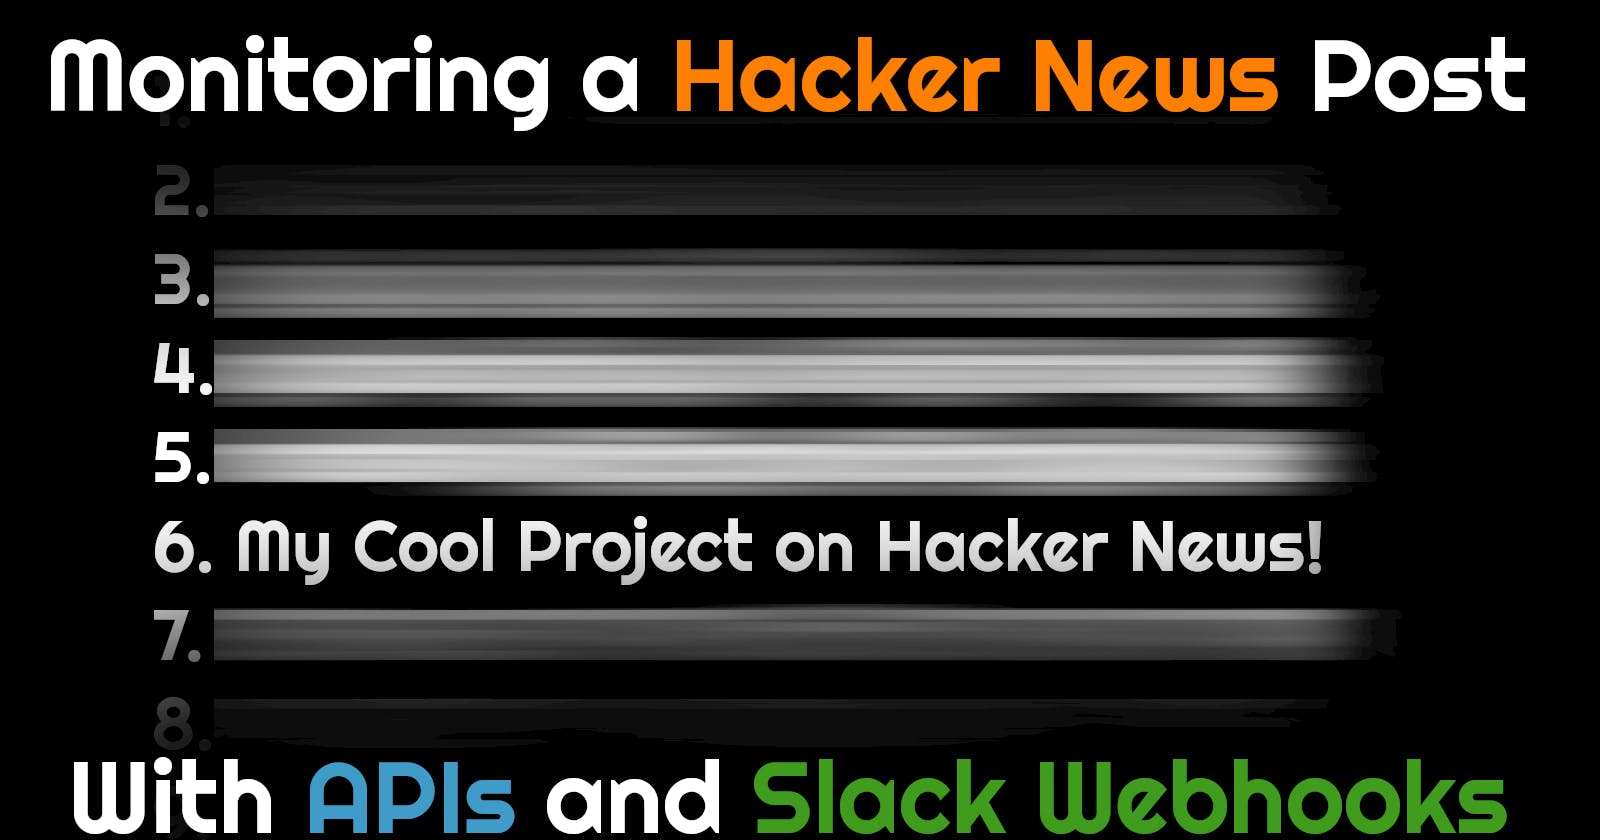 Monitoring a Hacker News Post